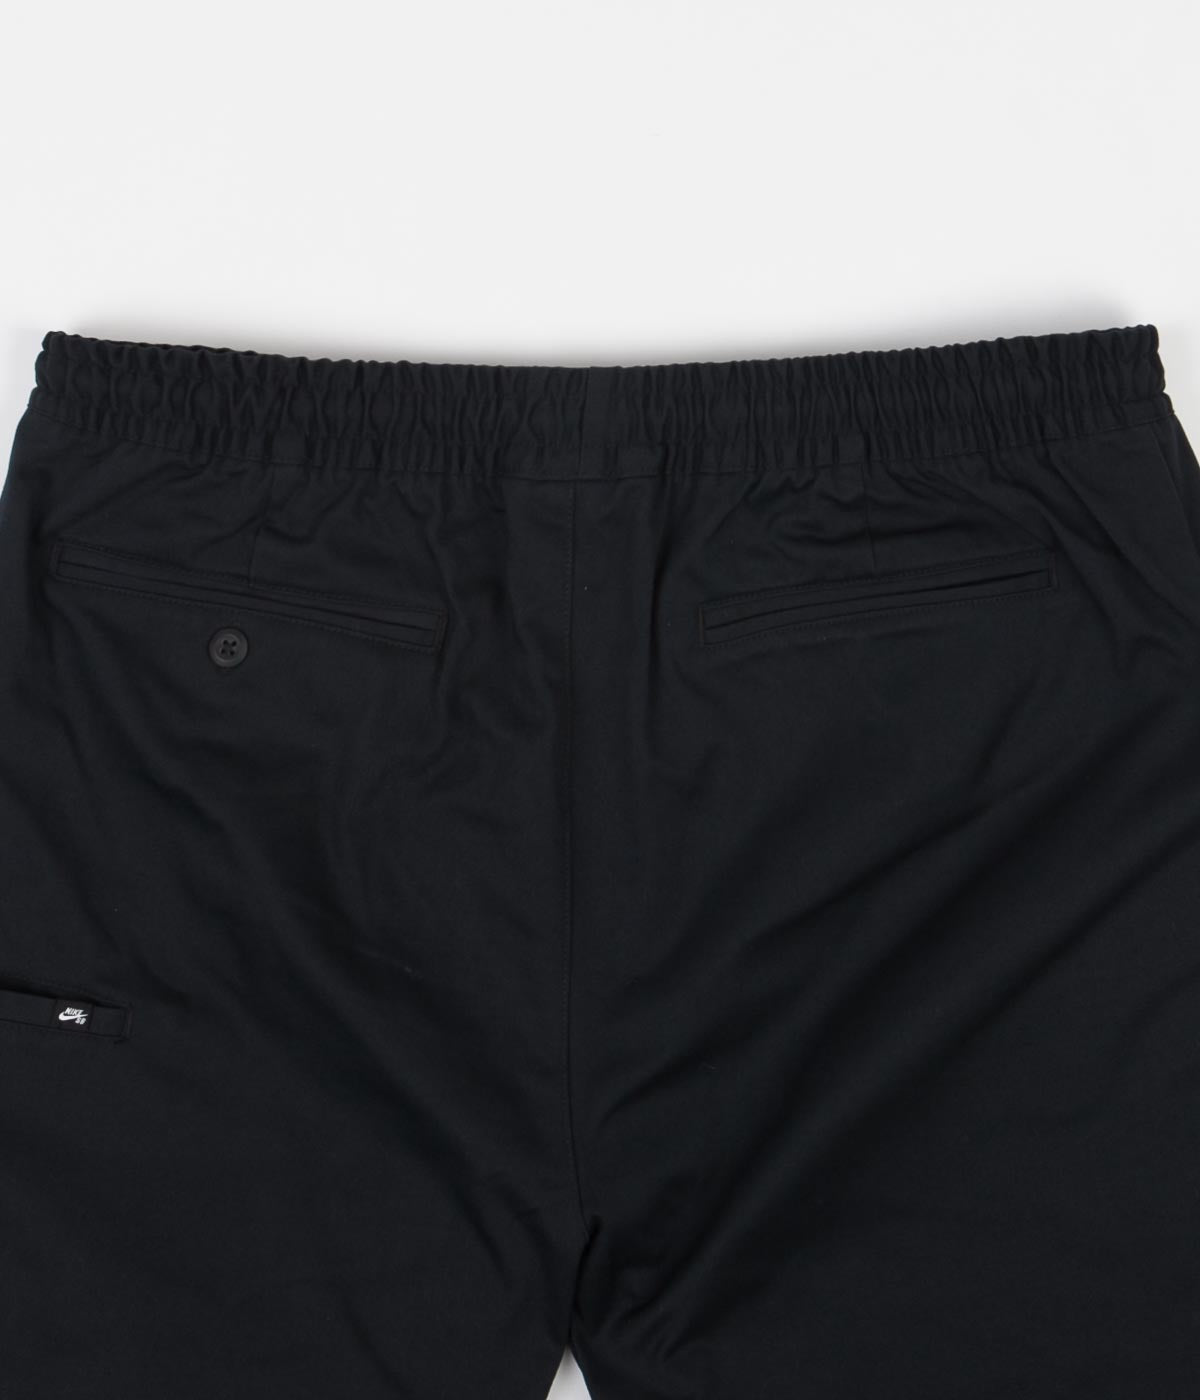 Nike SB Chino Shorts - Black | Flatspot